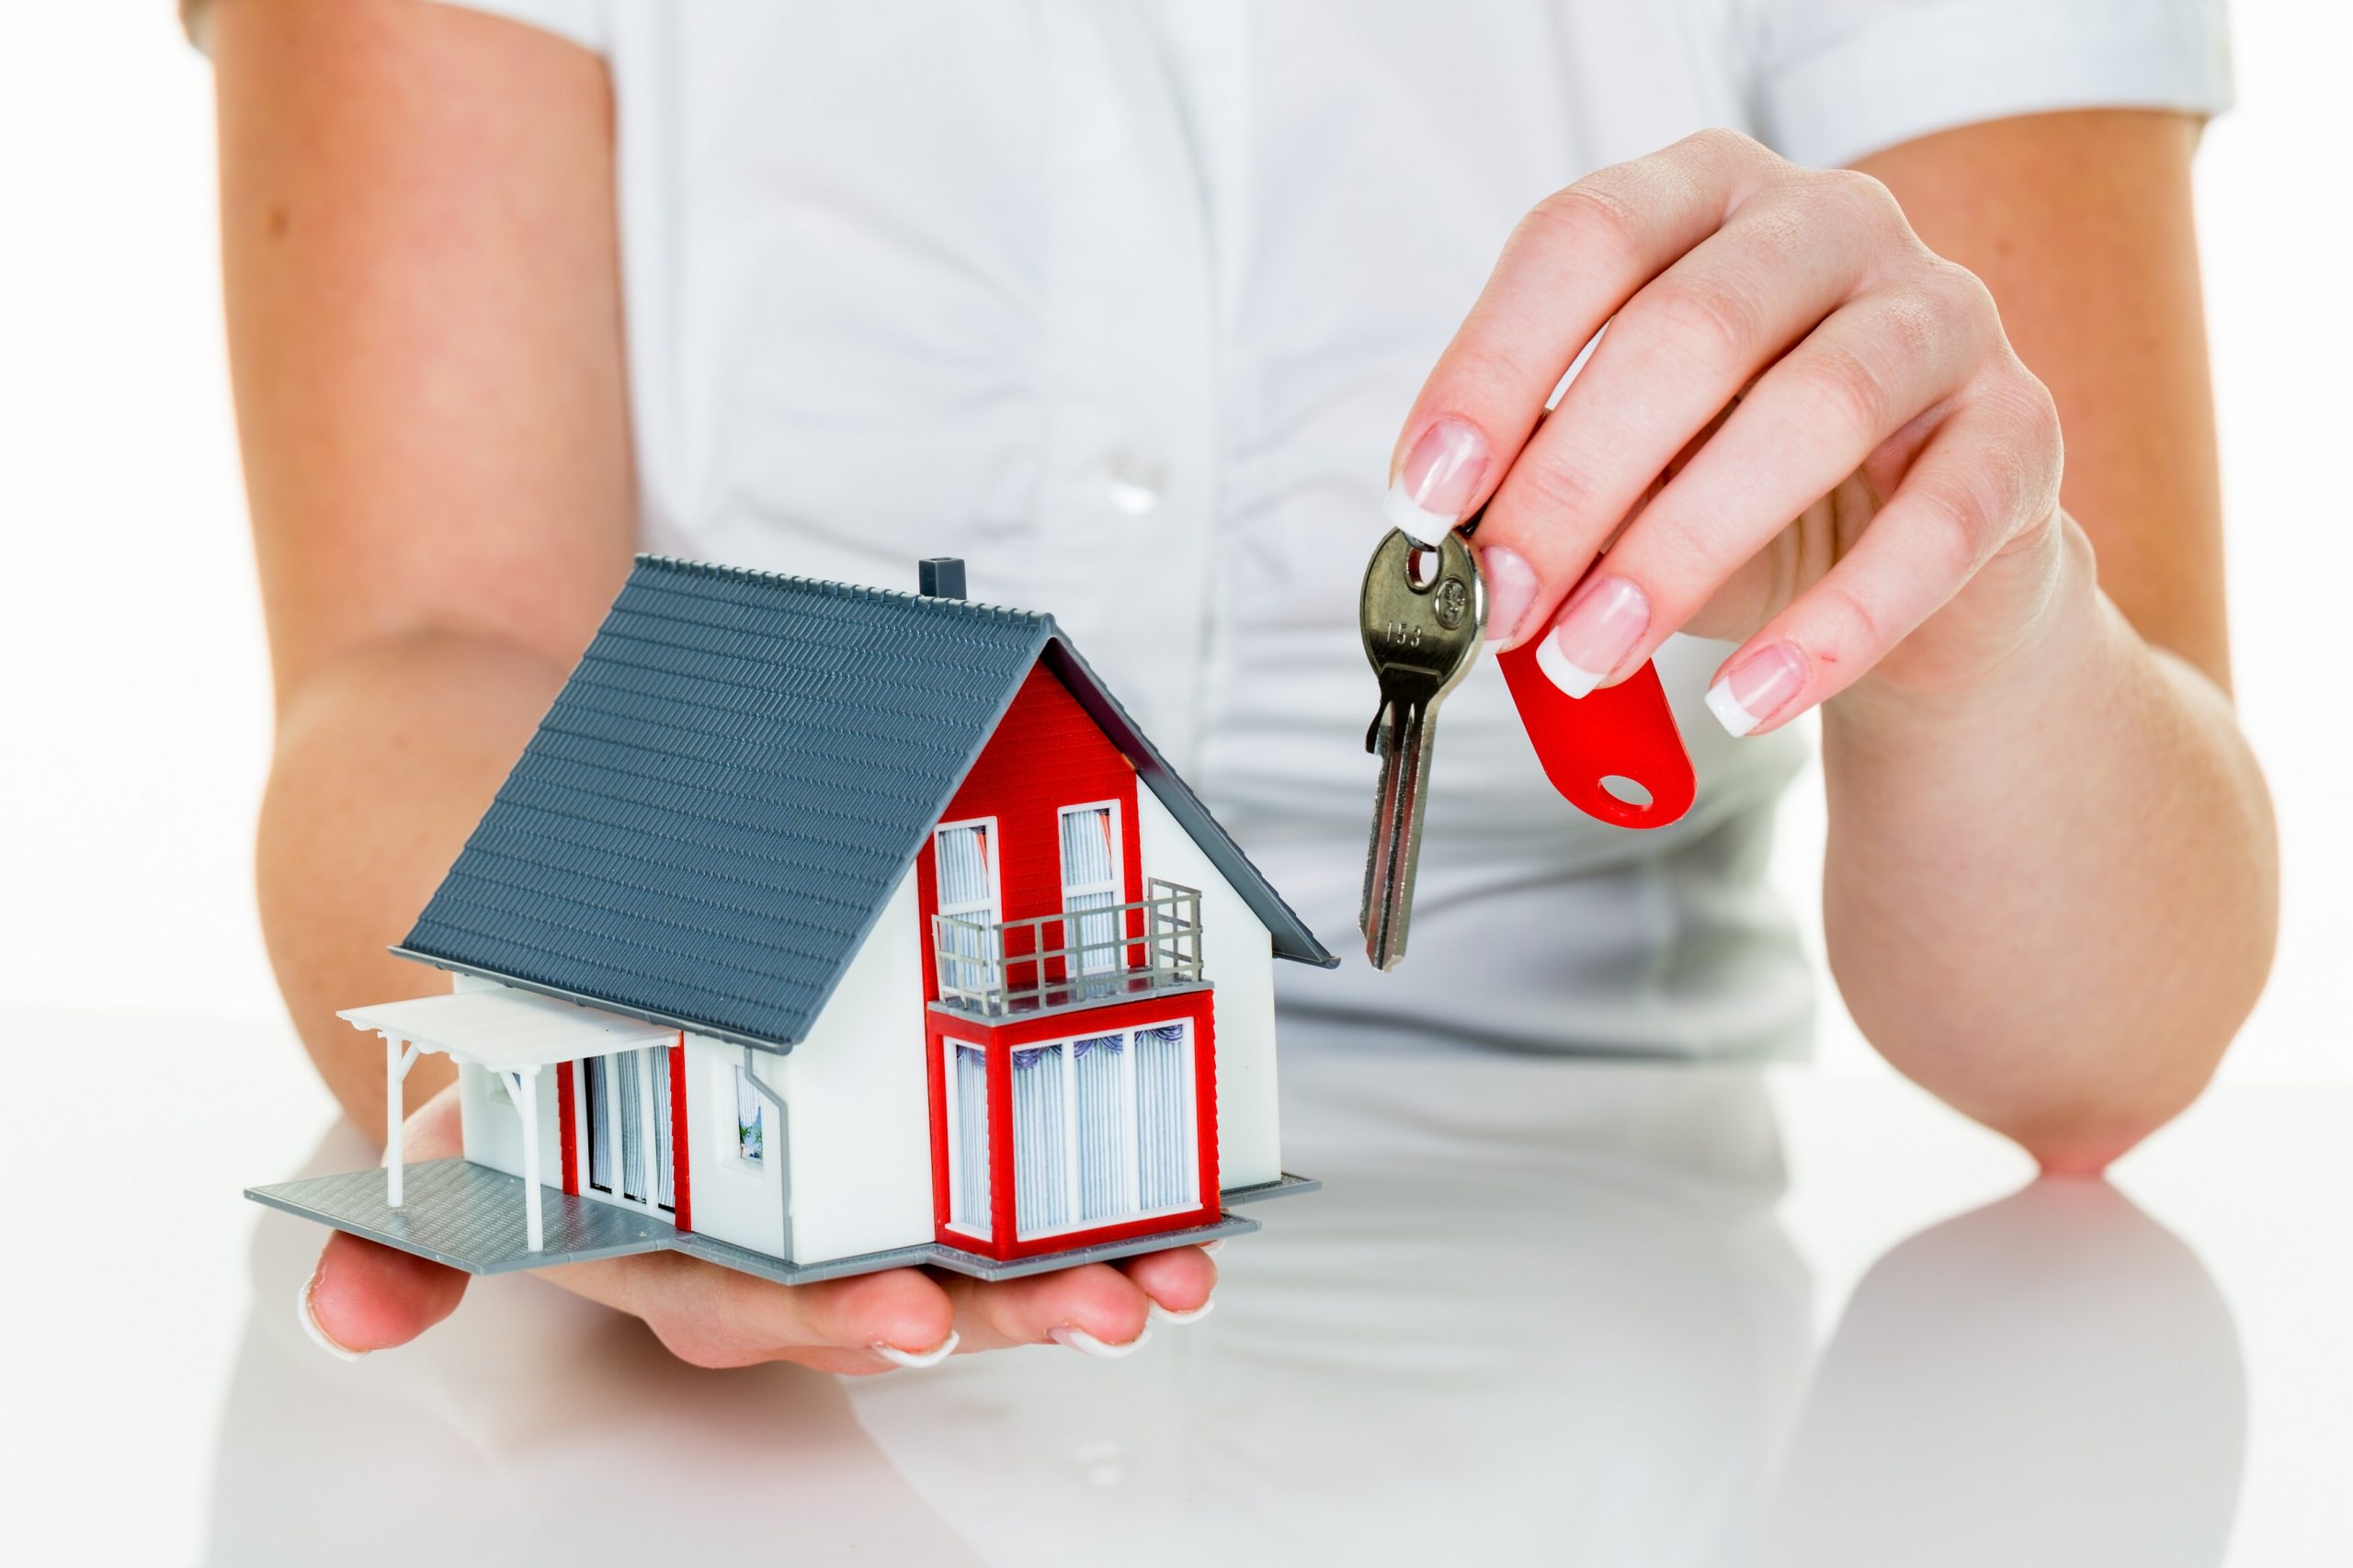 Возникновение спроса на недвижимость — факторы и перспективы